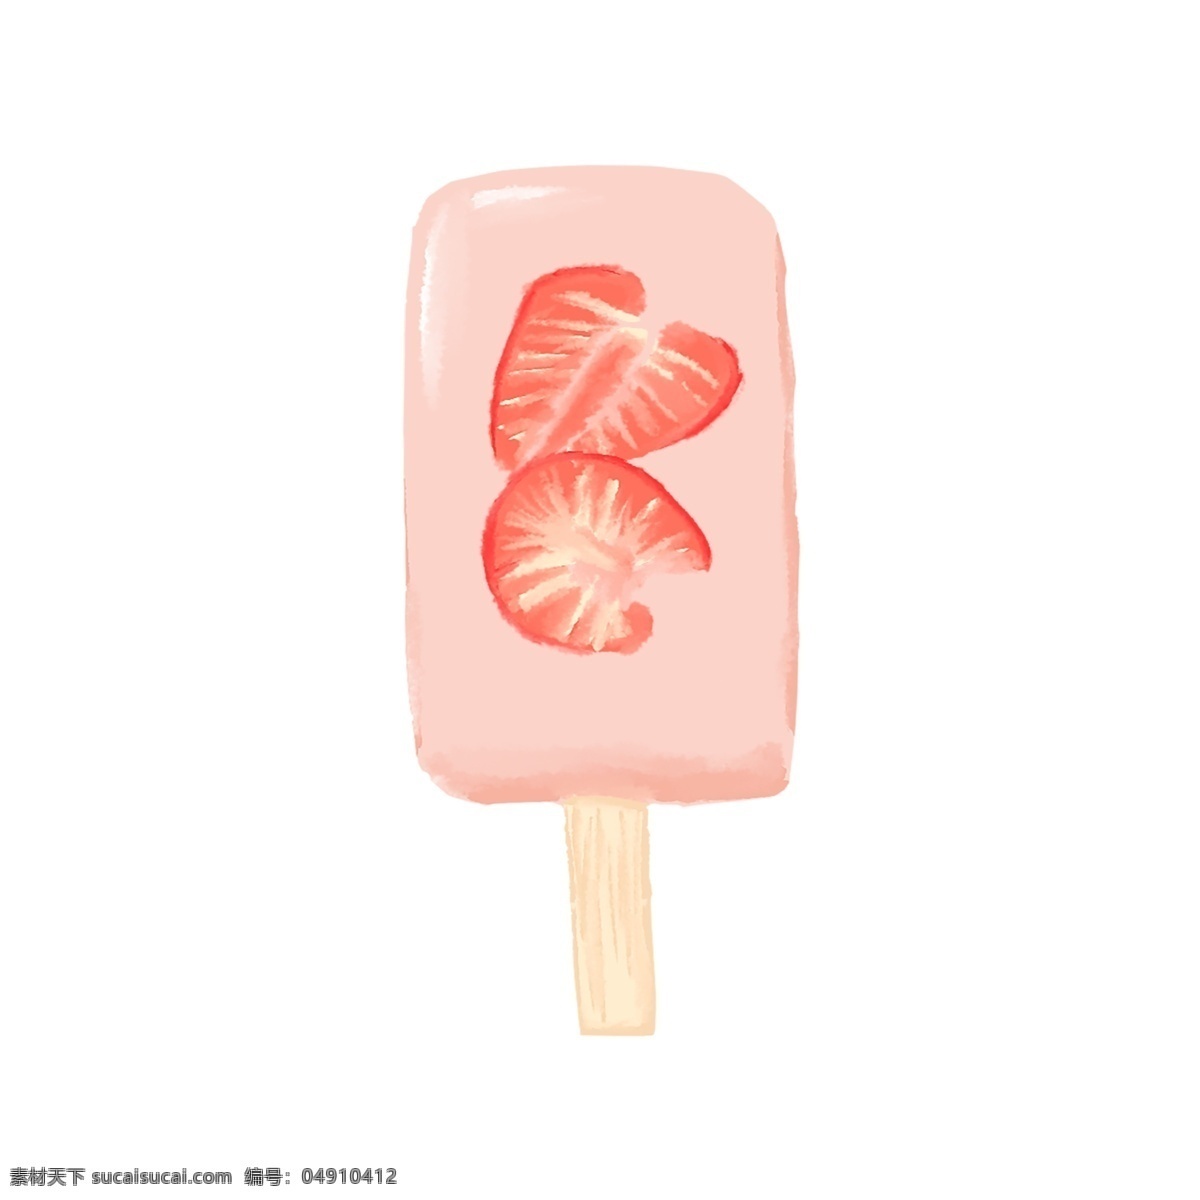 草莓 冰棍 夏天 可爱 粉红色 免 抠 图 原创 元素 免抠